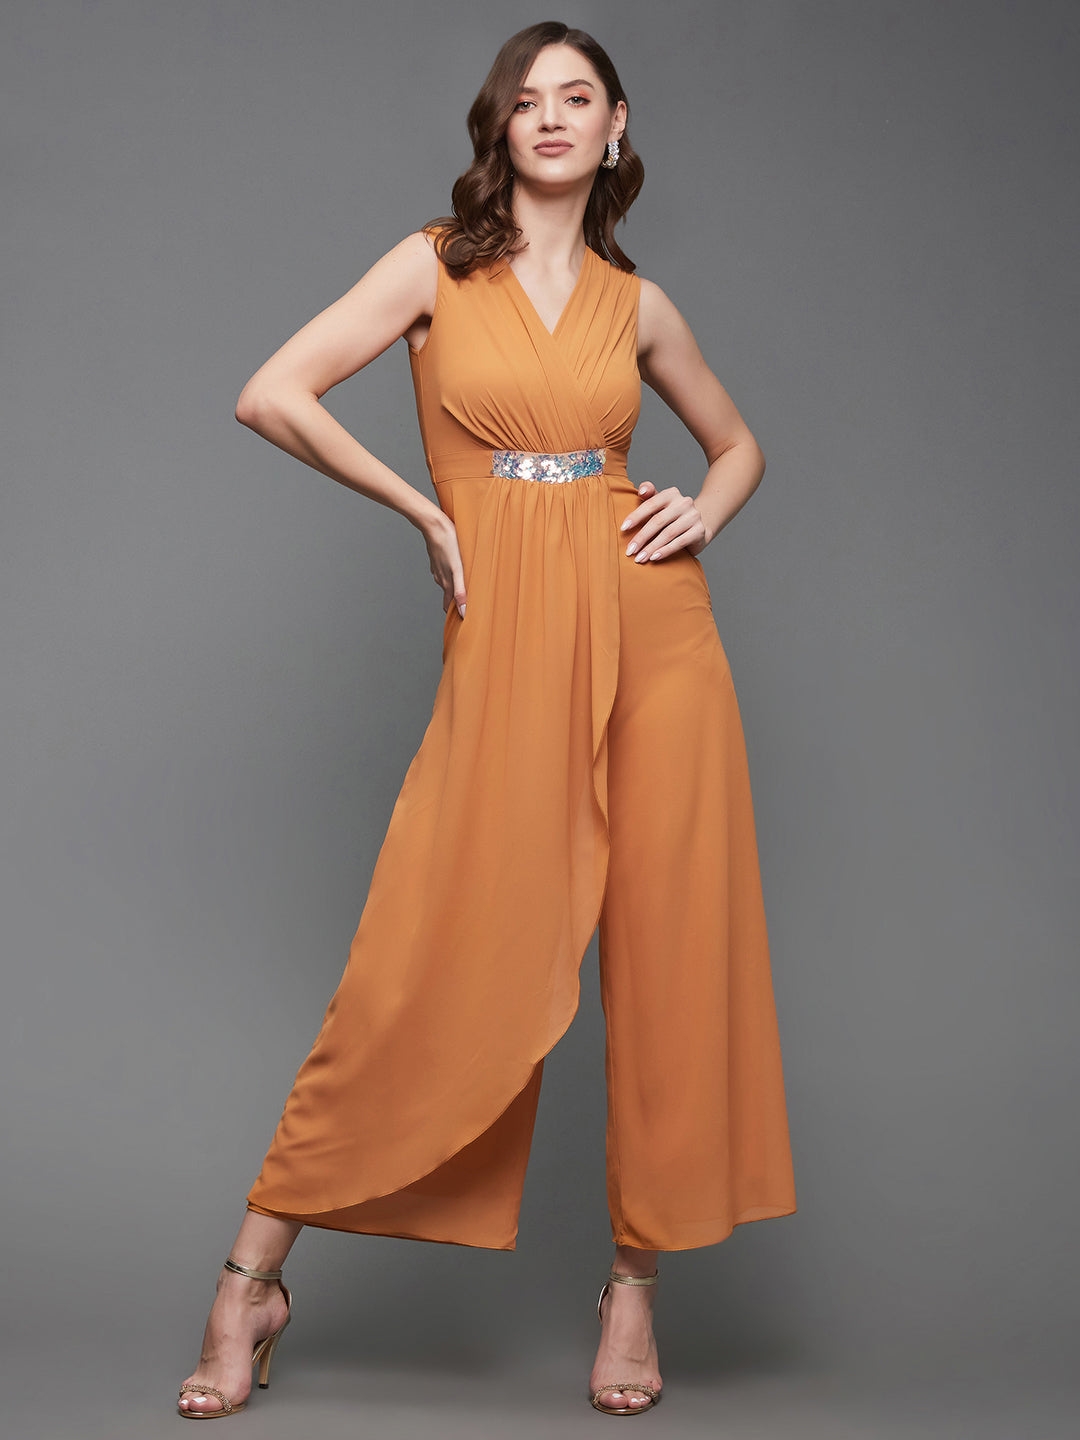 Dusty Orange Colored V-Neck Sleeveless Embellished Wrap Regular-Length Jumpsuit